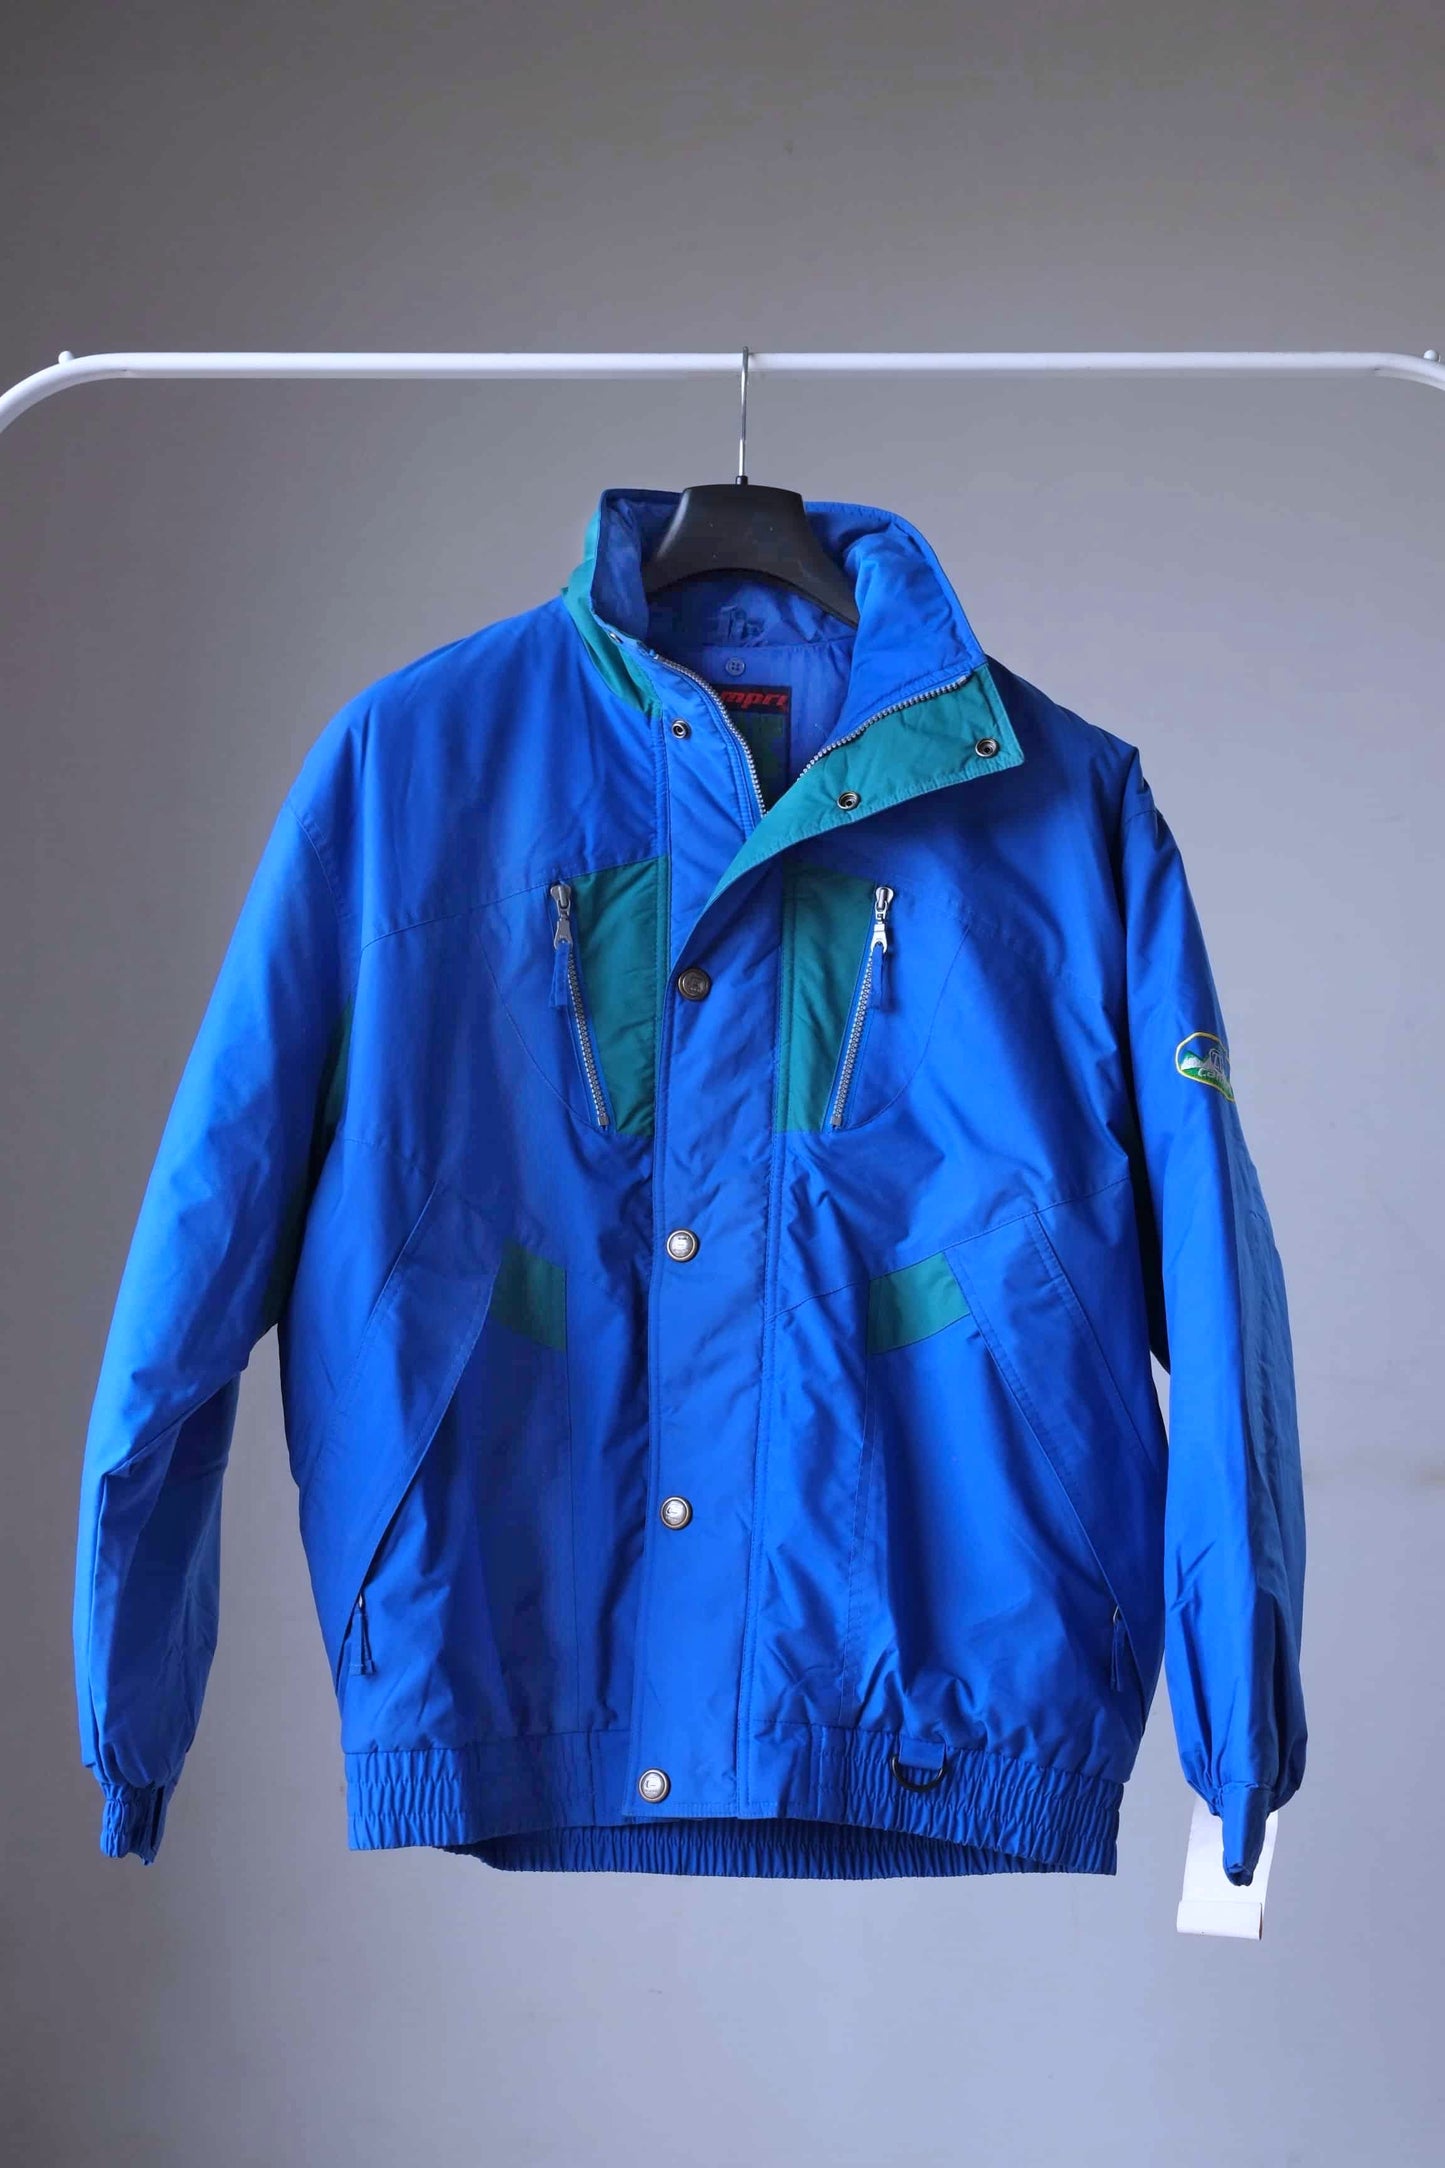 Vintage 90's Men's Ski Jacket blue